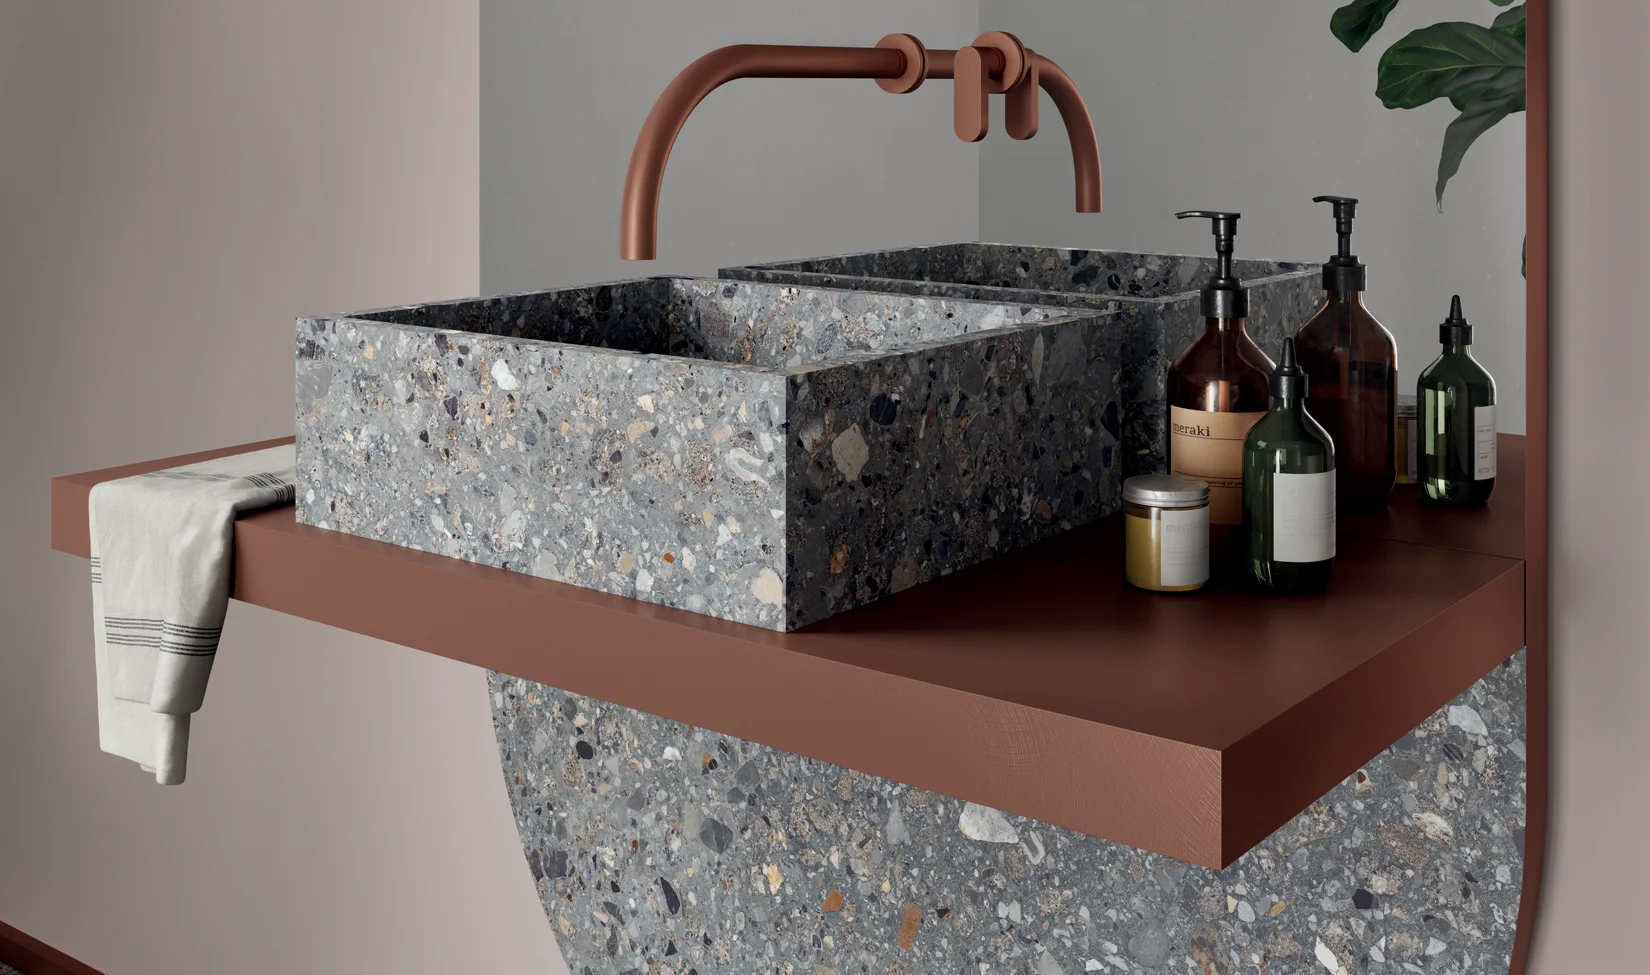  Design di bagno con lavabo in gres porcellanato effetto pietra decorativo della collezione Dolmix in tonalità Dark, rubinetto in rame e accessori.